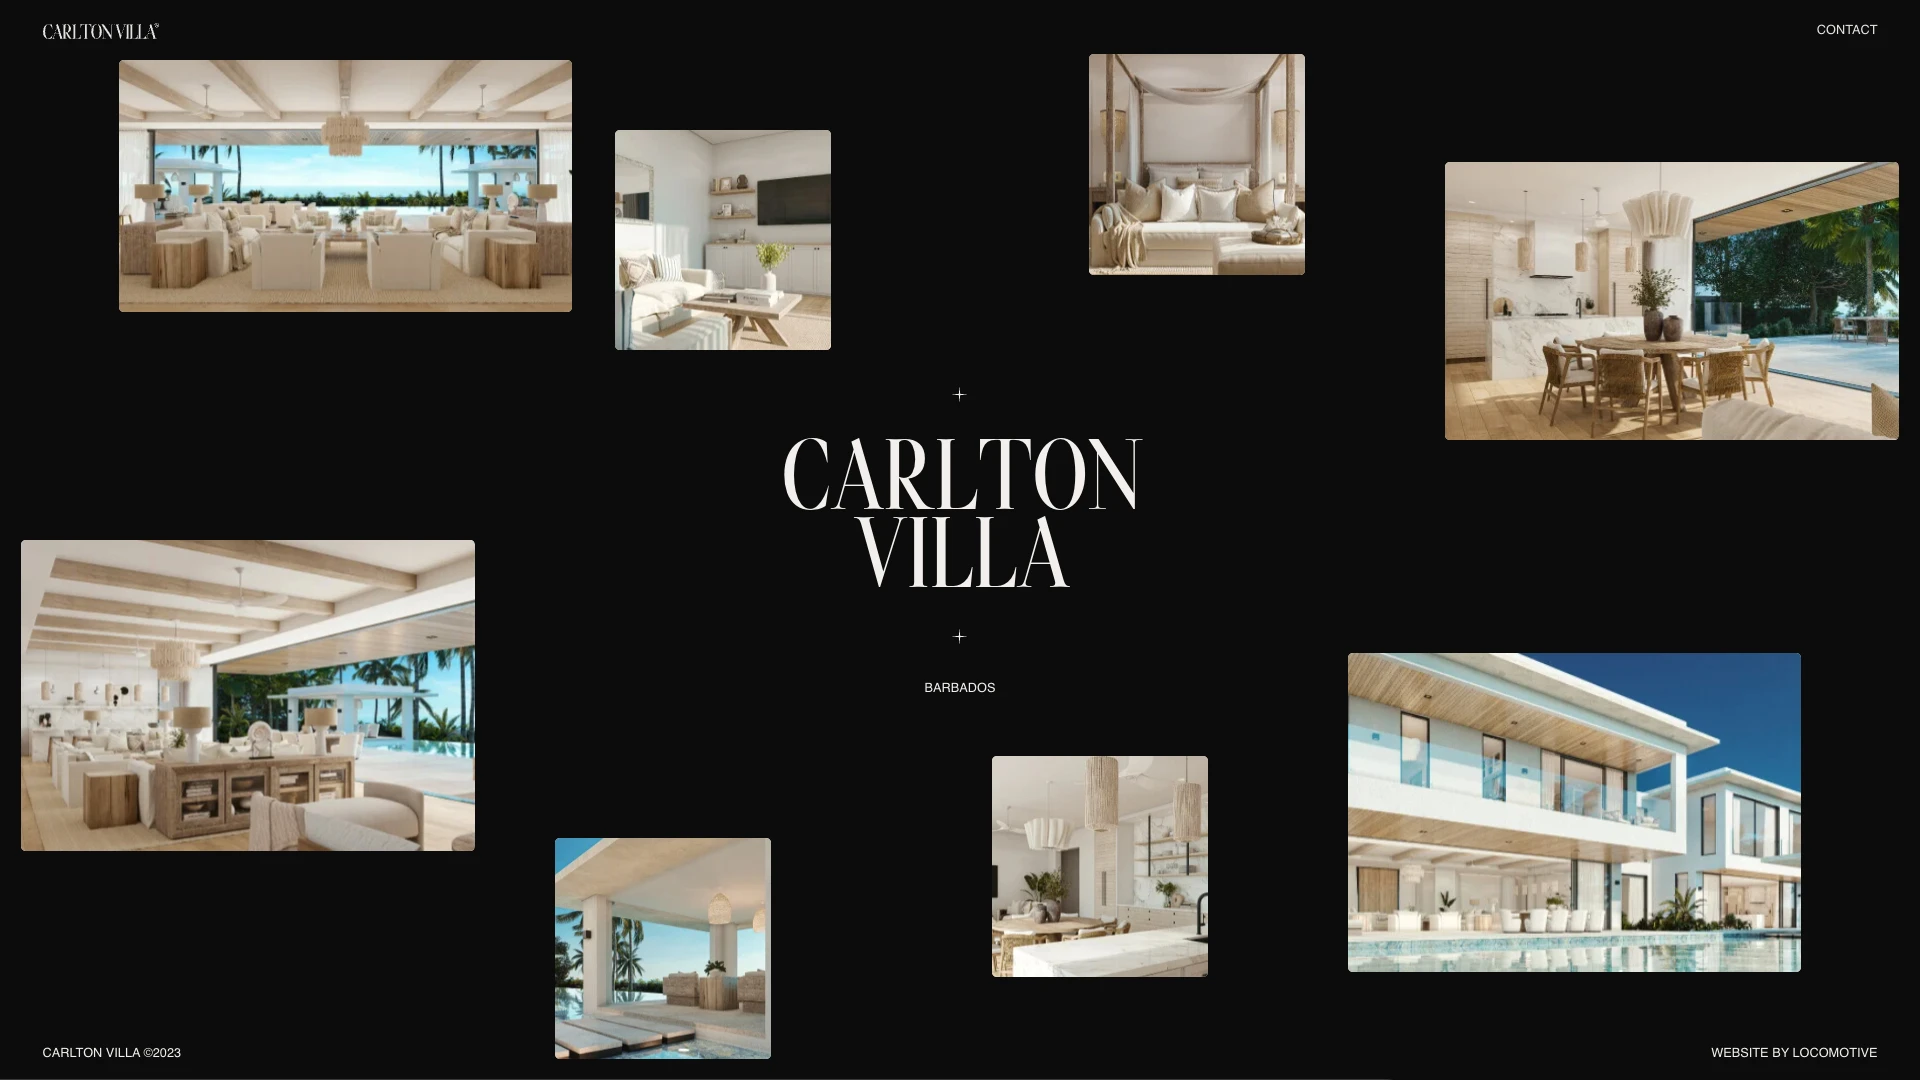 Carlton Villa